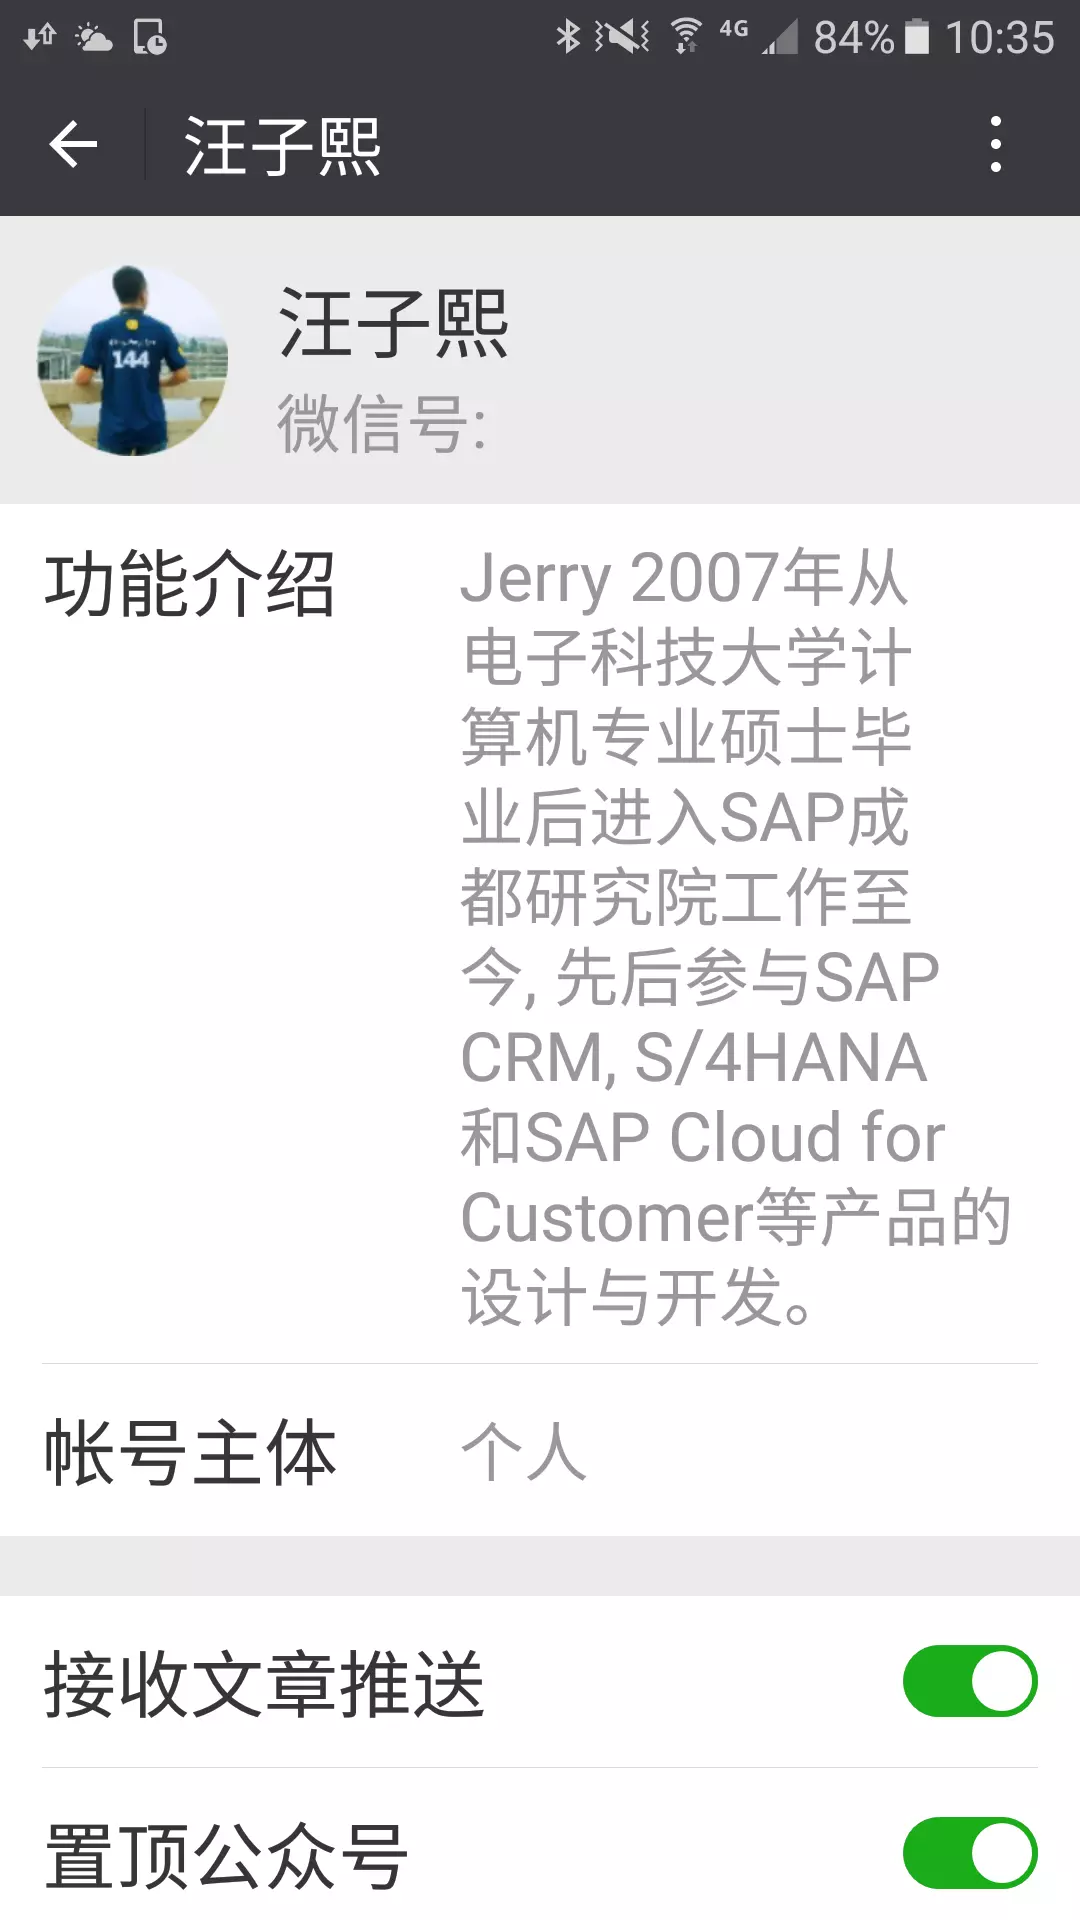  SAP云平台上CPI的初始化工作